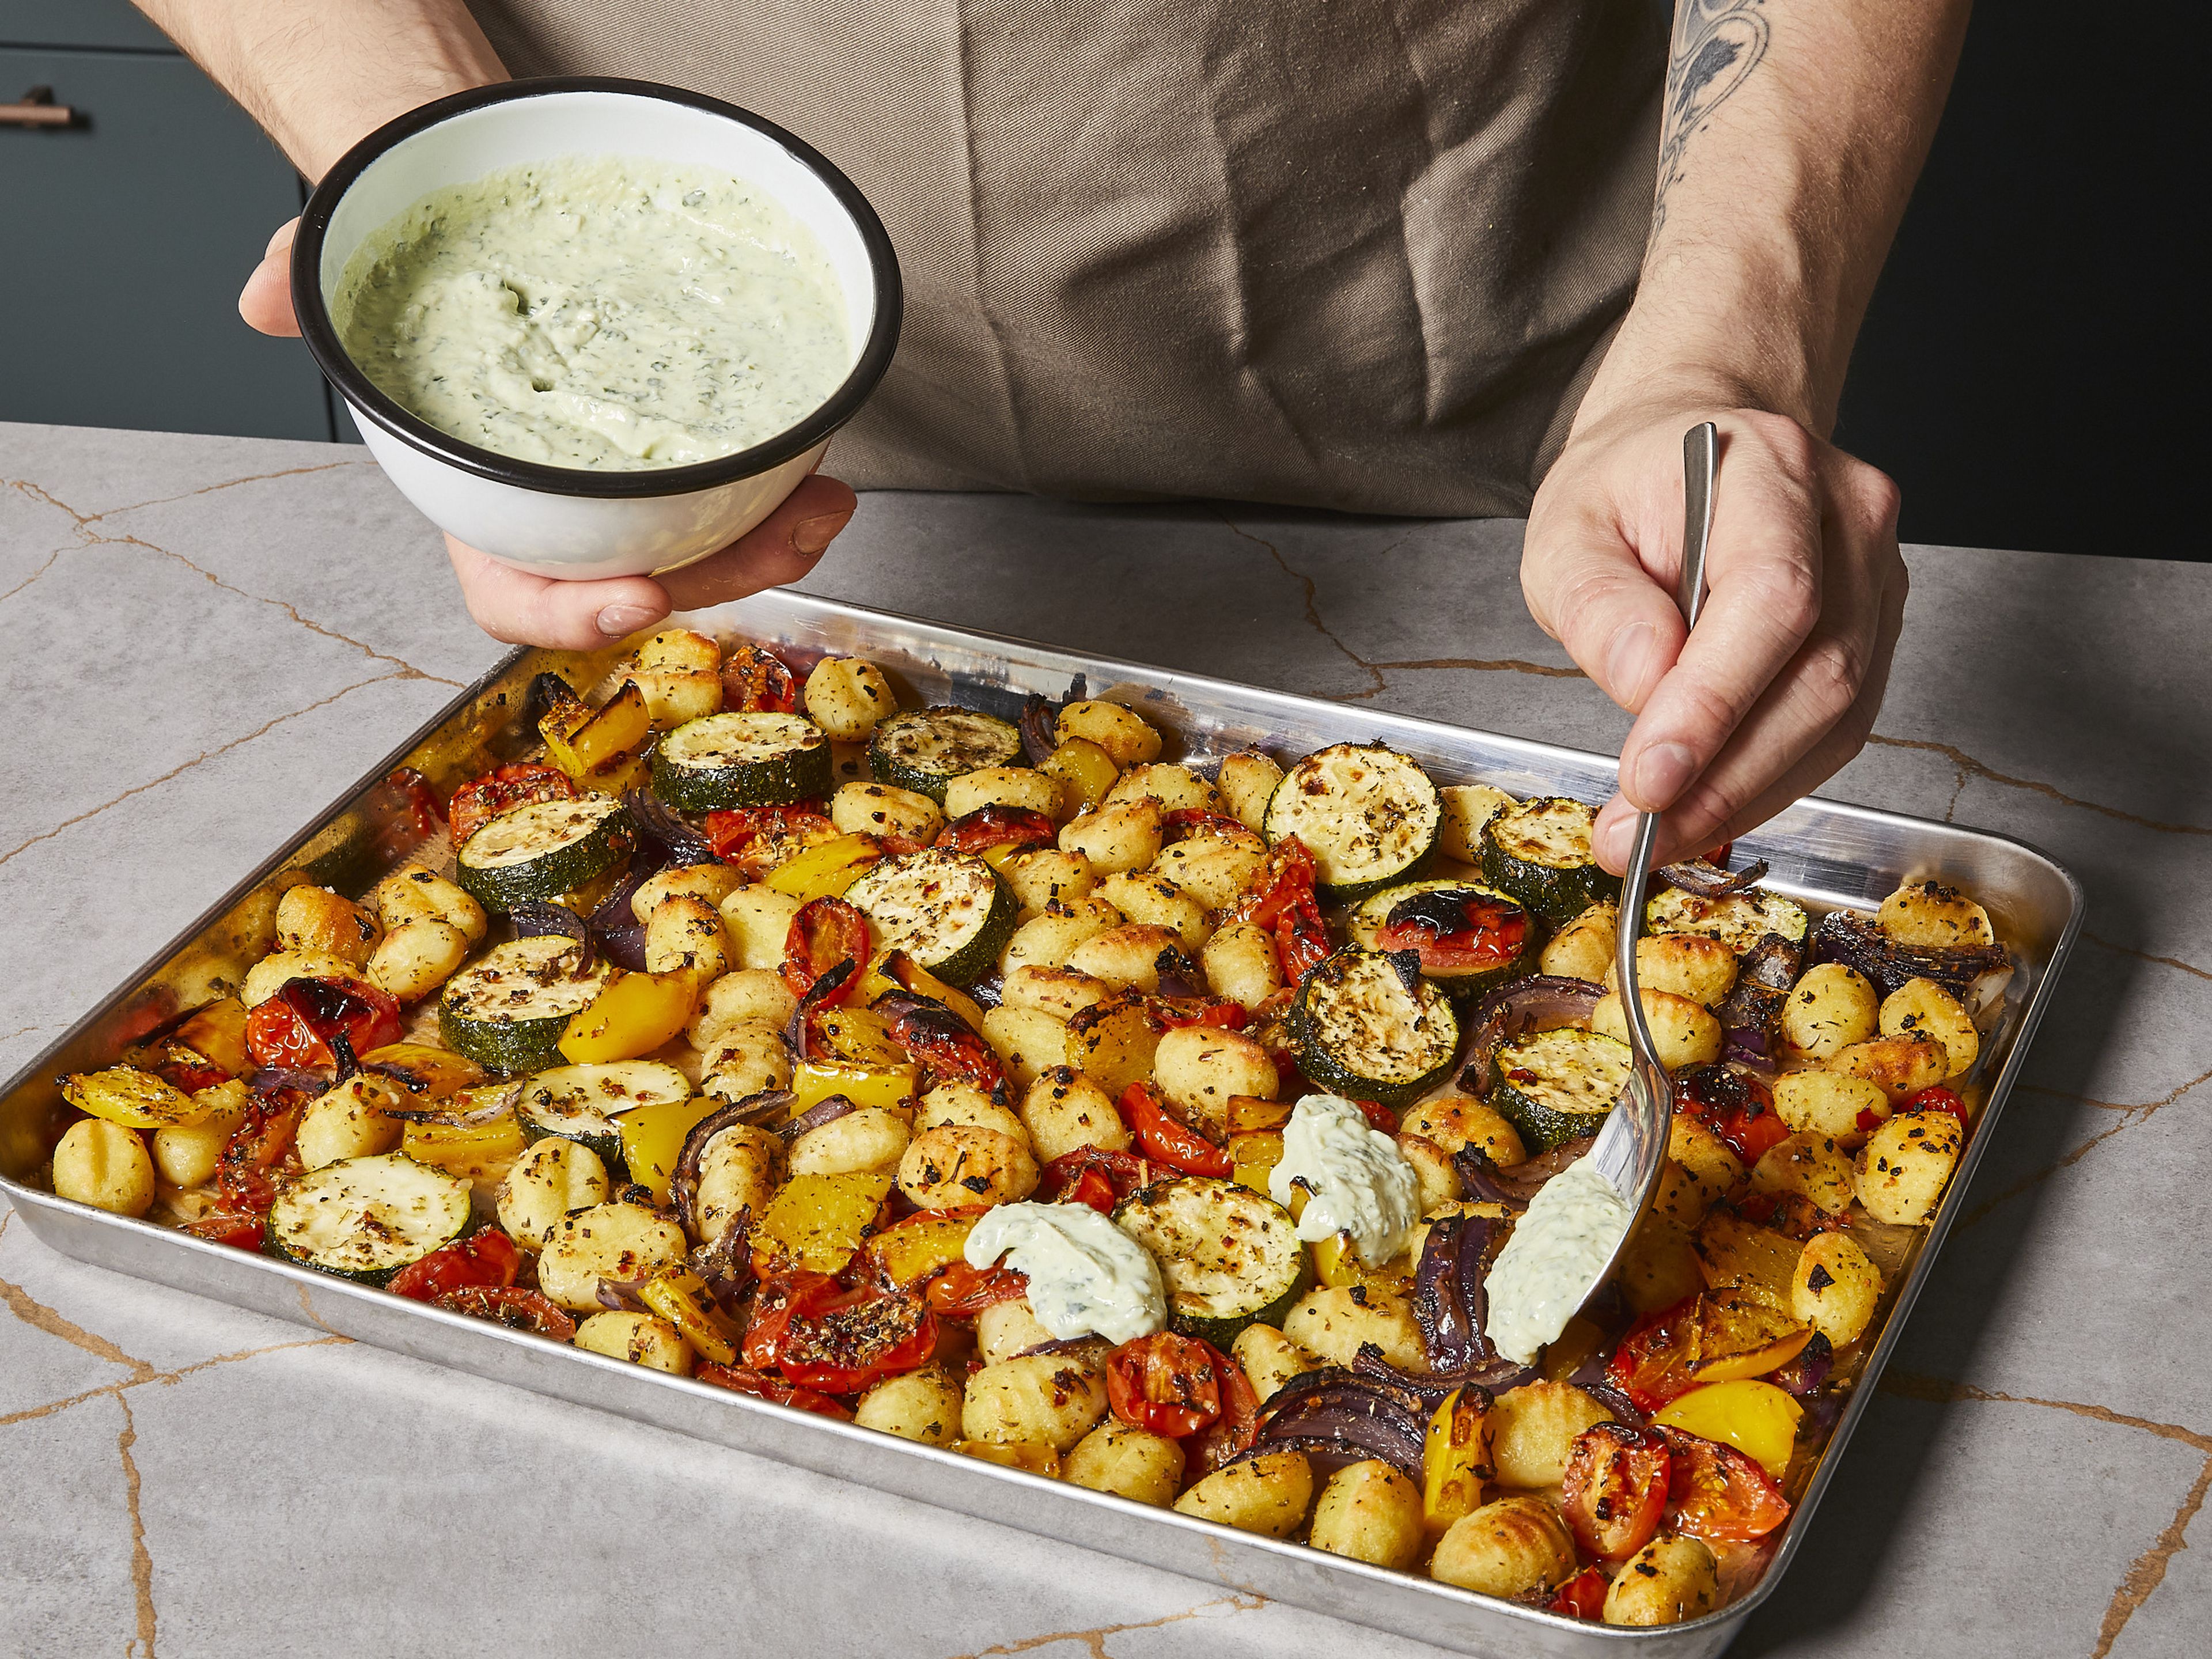 Sobald das Gemüse fertig gebacken ist, das Blech aus dem Ofen nehmen und kurz abkühlen lassen. Direkt vom Blech mit dem Basilikum-Ricotta-Dip servieren. Nach Belieben mit Parmesankäse bestreuen. Guten Appetit!